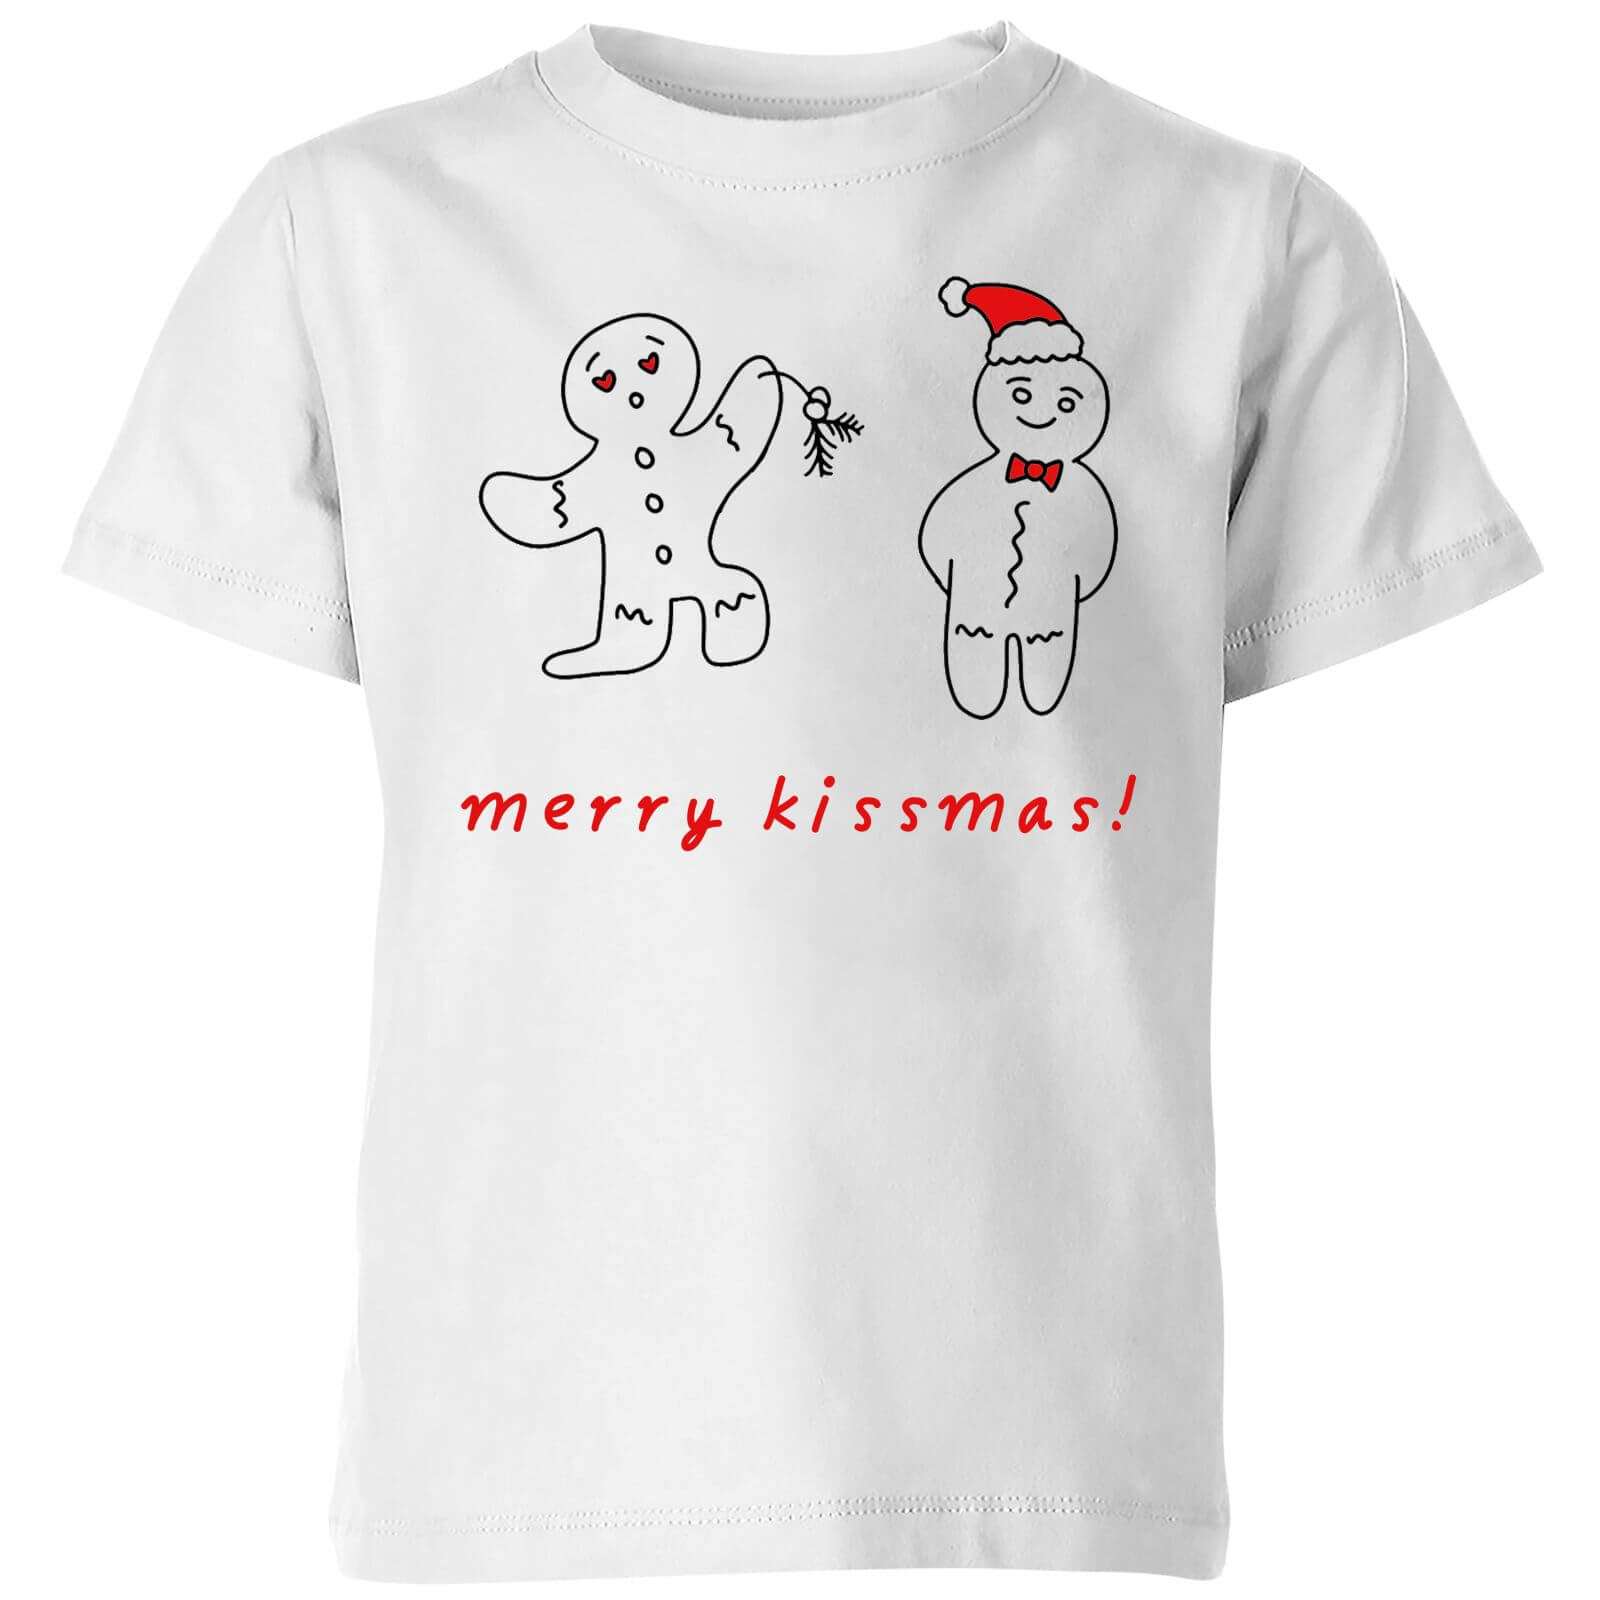 Merry Kissmas Kids' T-Shirt - White - 3-4 Years - White